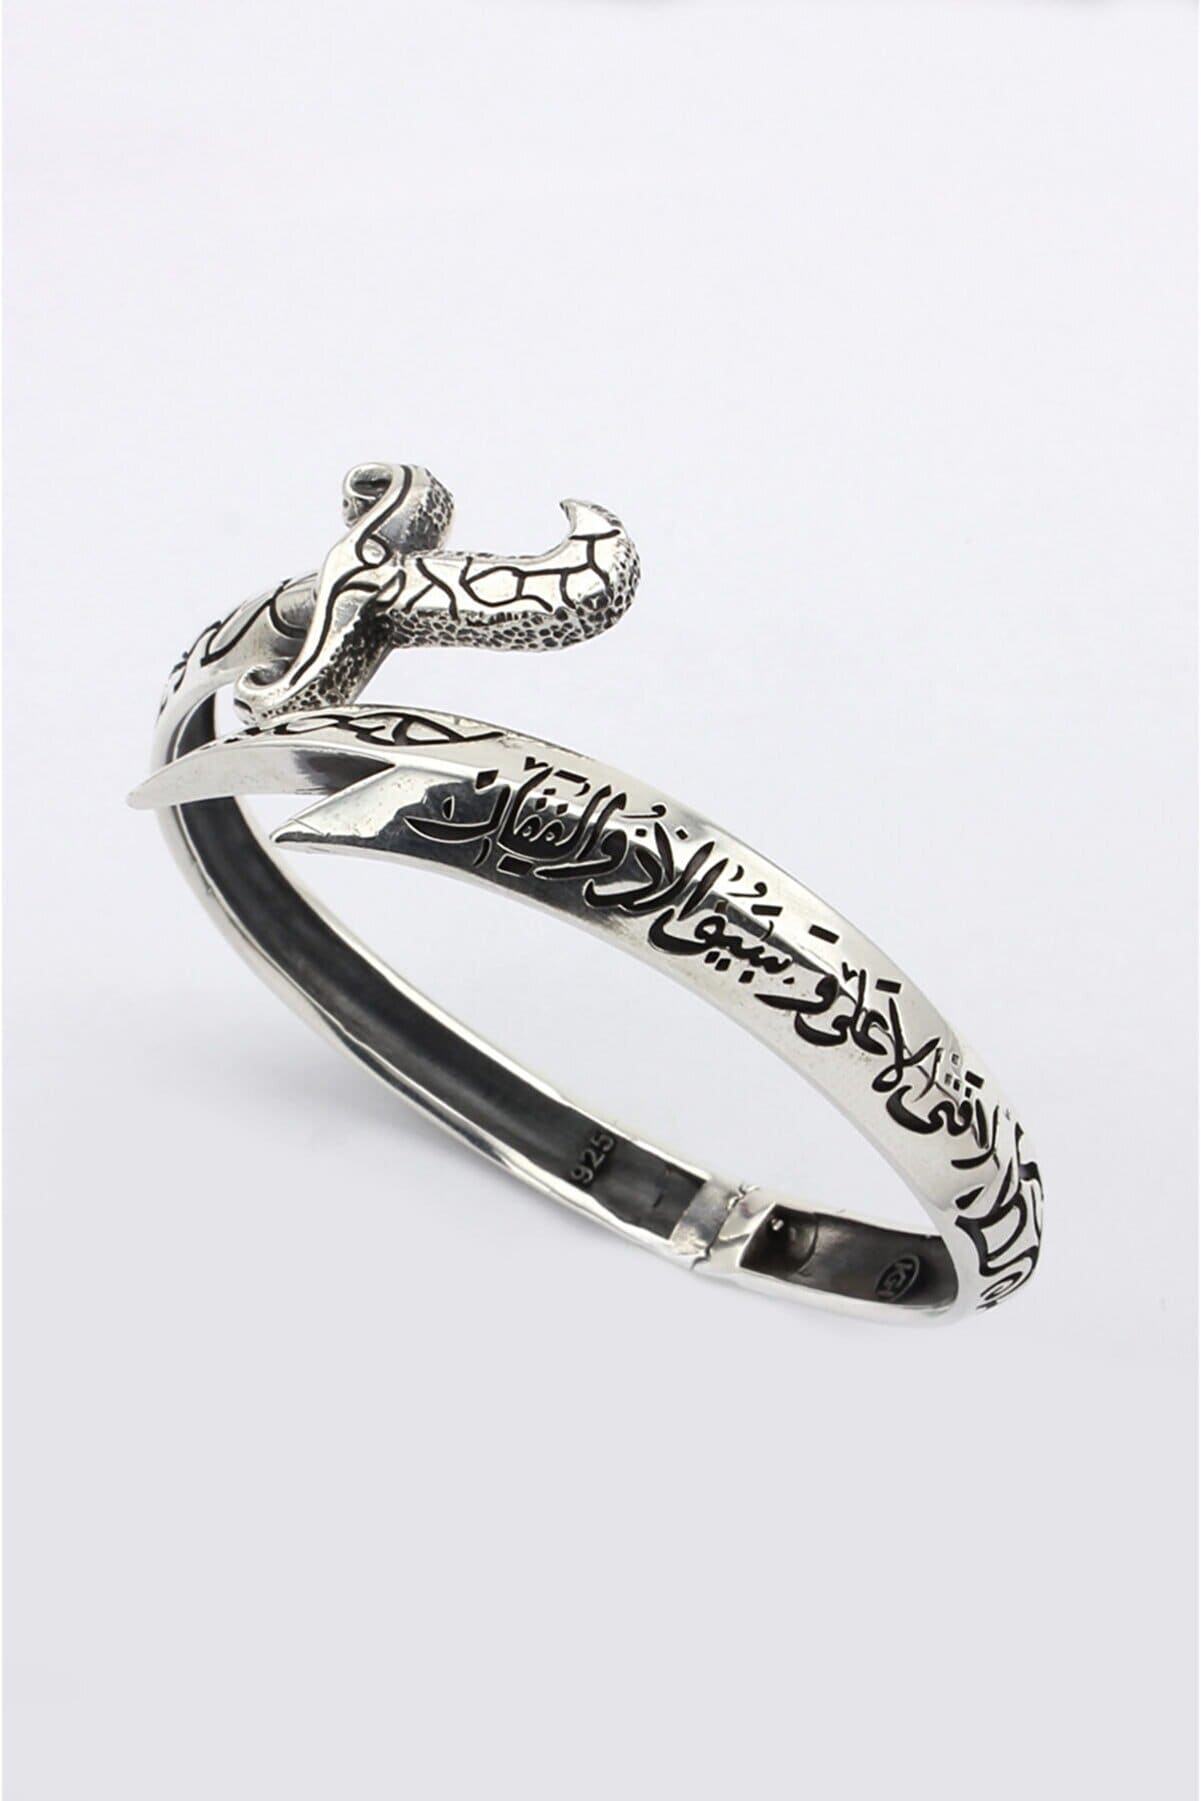 Silver Sword Bracelet , Handmade Zulfiqar Bracelet , Silver Man Warrior  Bracelet , Adjustable Bracelet , 925k Sterling Silver Bracelet - Etsy